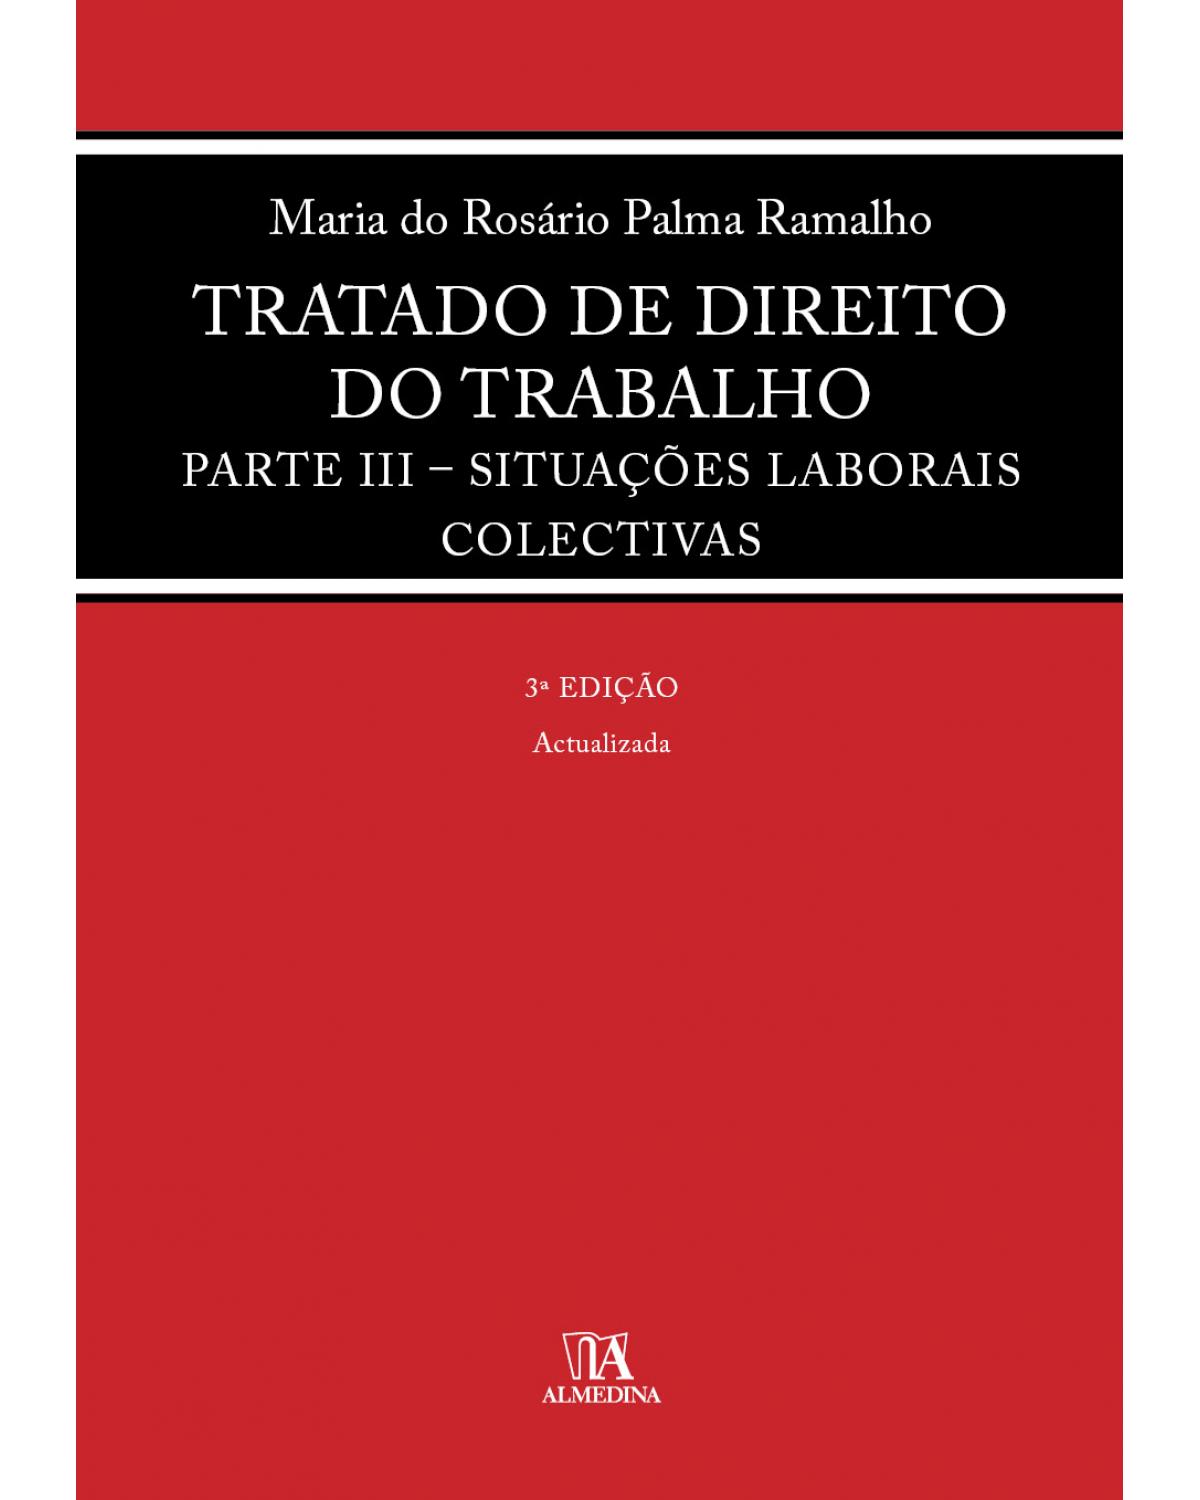 Tratado de direito do trabalho - parte III: Situações laborais colectivas - 3ª Edição | 2020